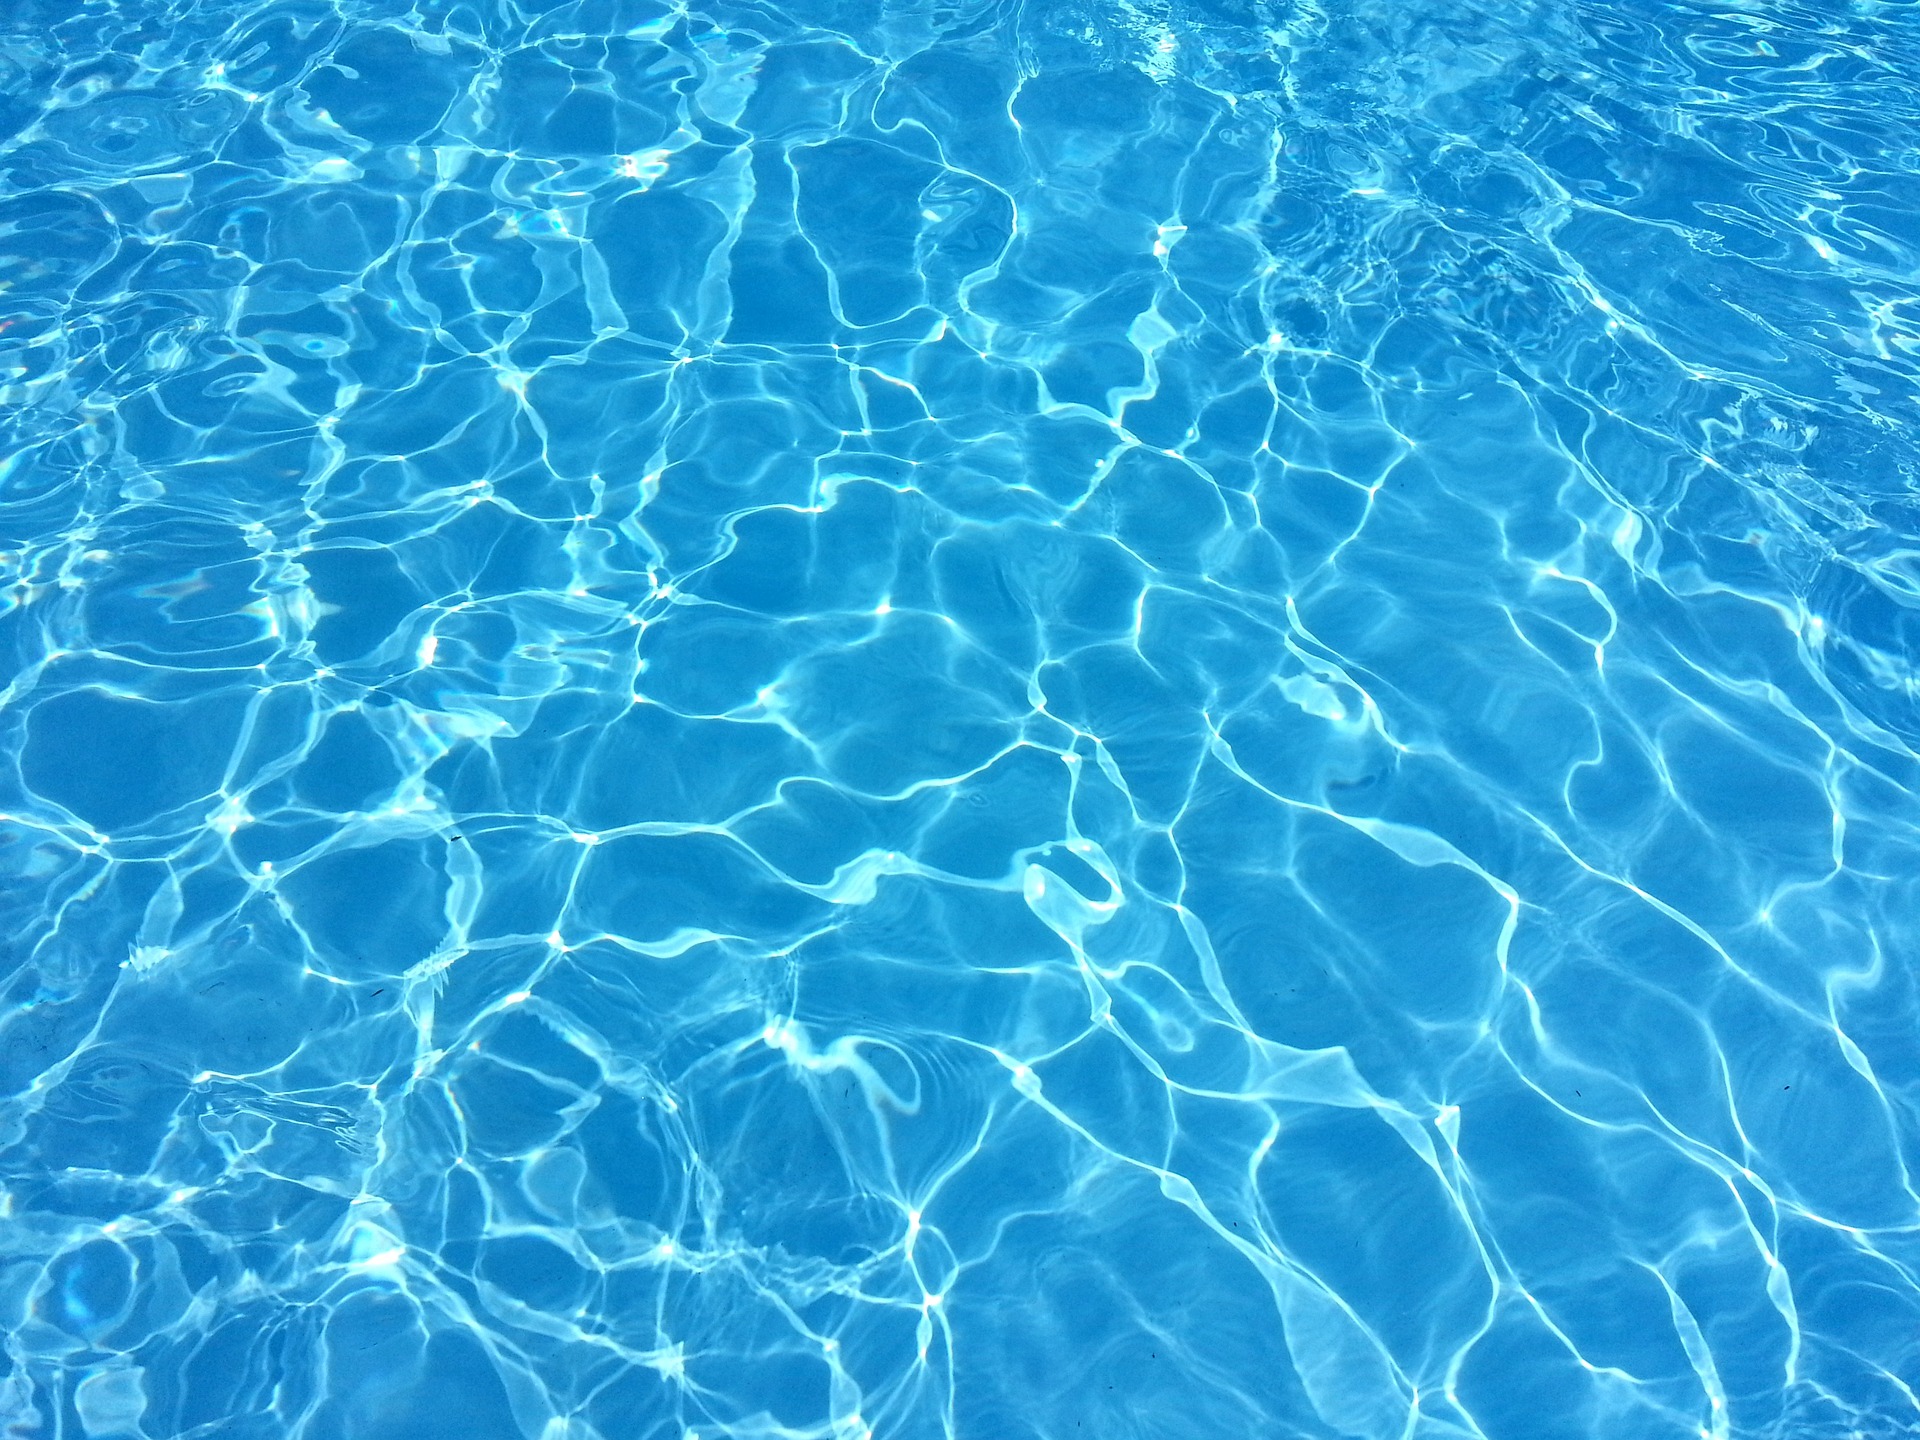 Двенадцатилетний мальчик утонул в бассейне алтайского санатория